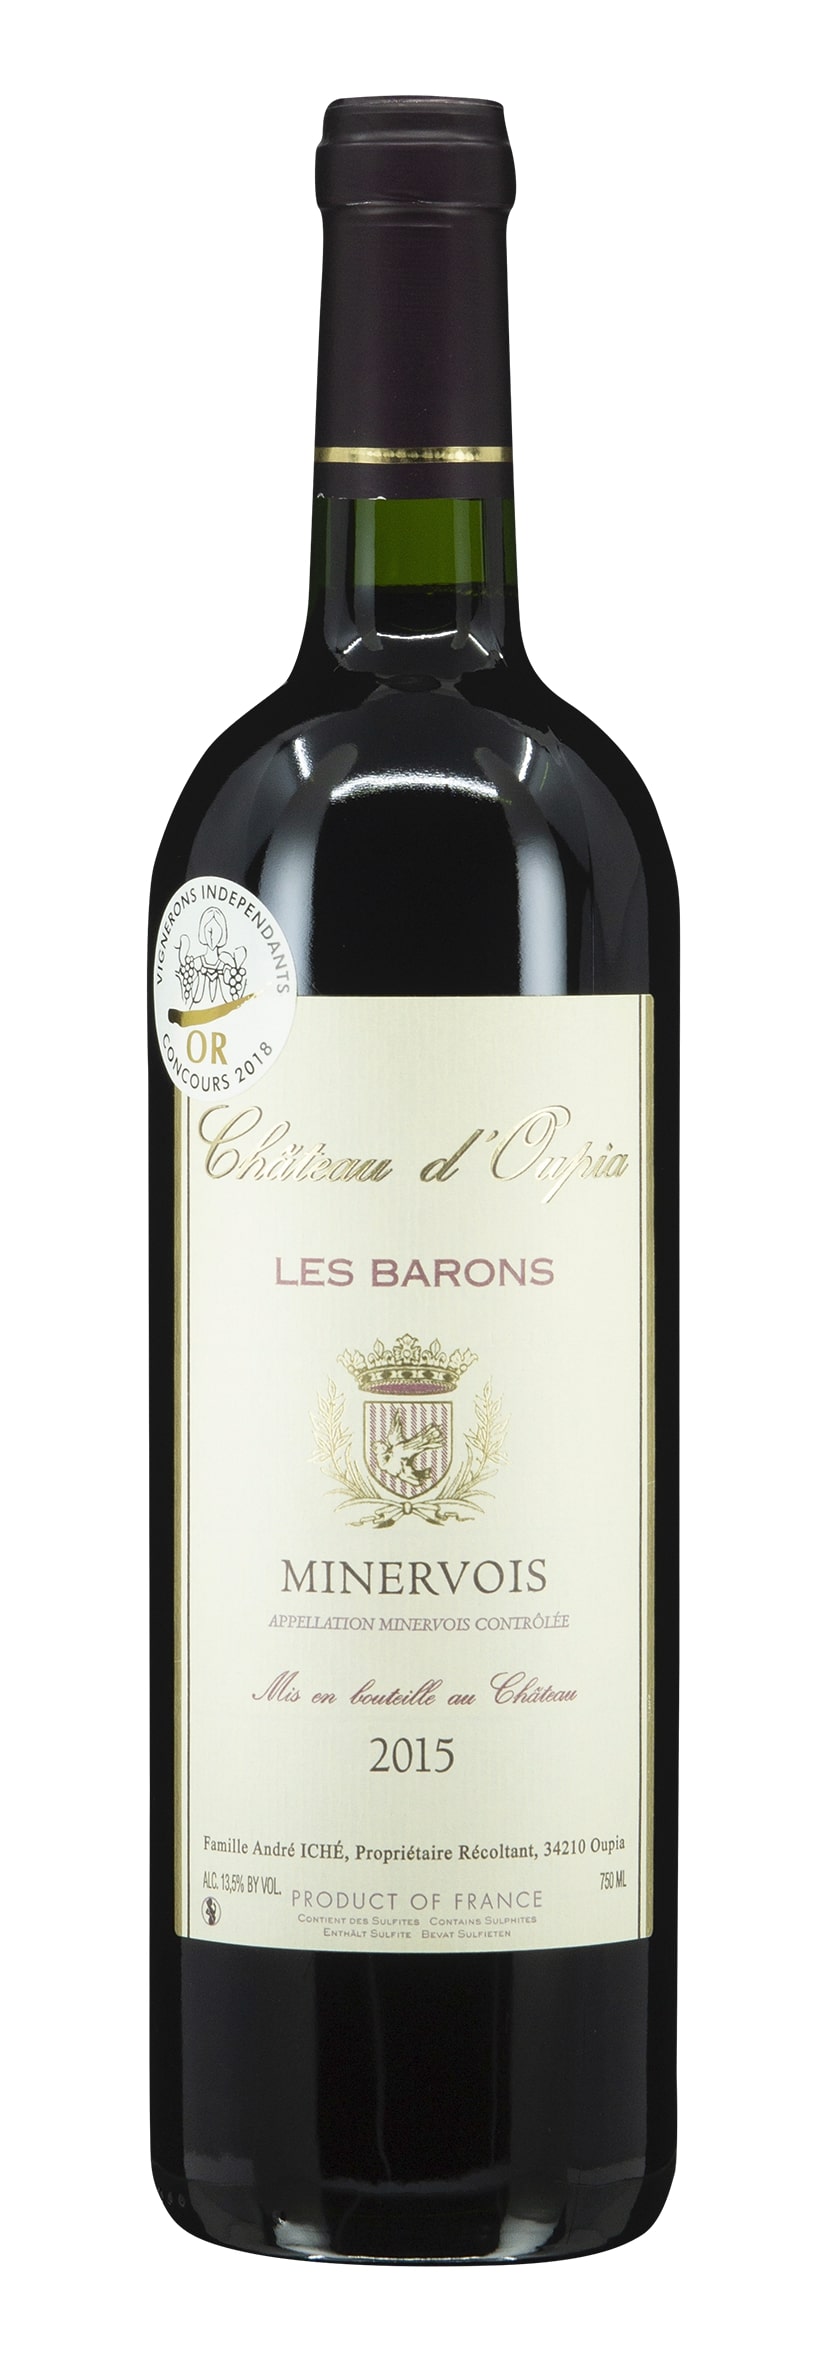 Minervois AOC Les Barons 2015